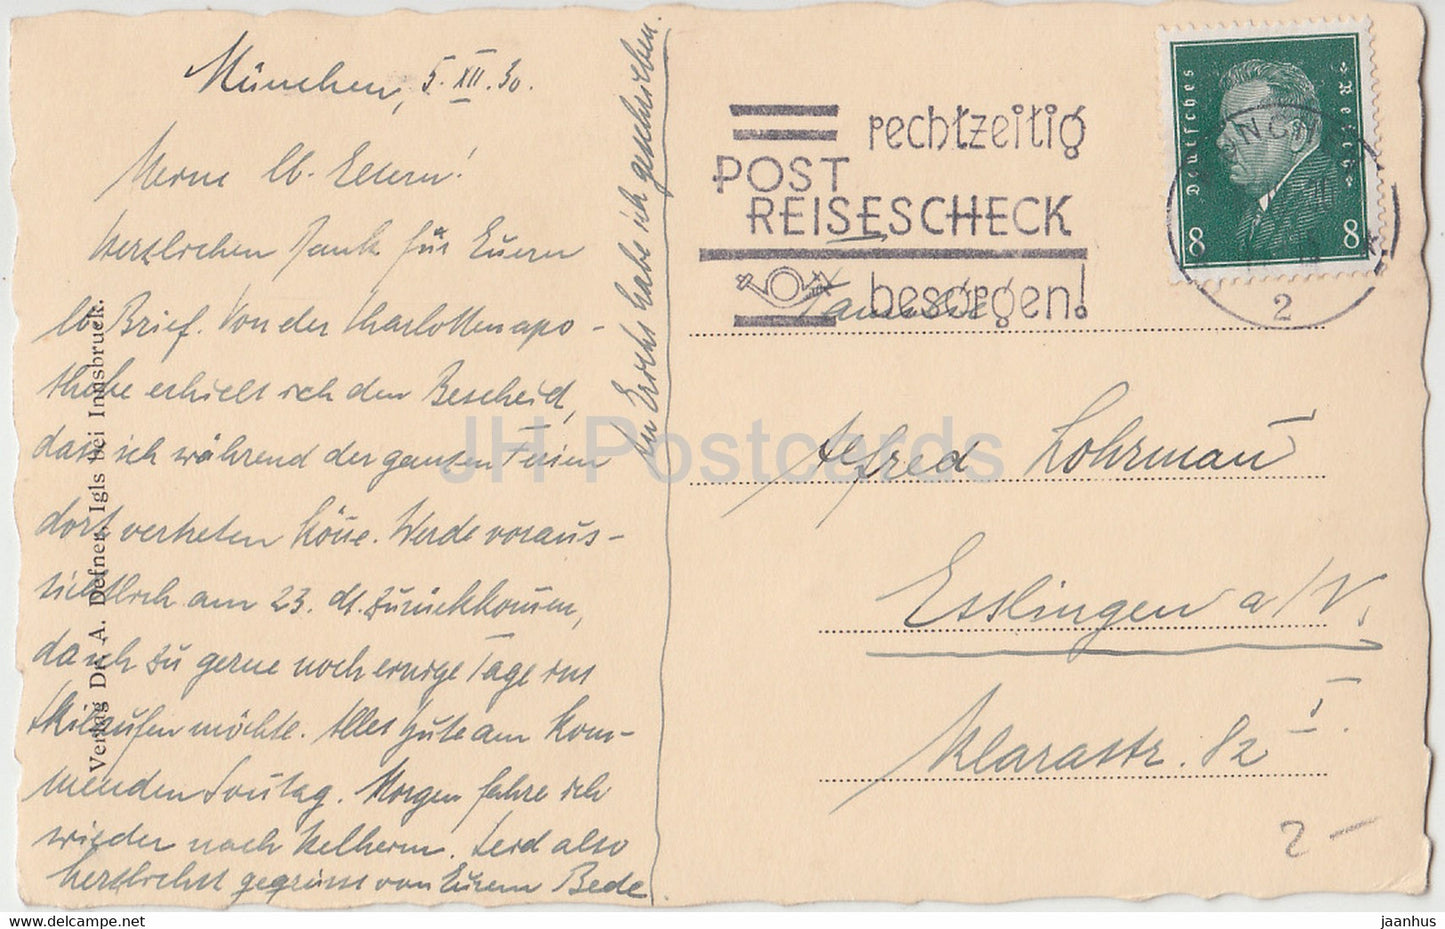 weißer Krokus - Blumen - A. Defner - alte Postkarte - 1930 - Österreich - gebraucht